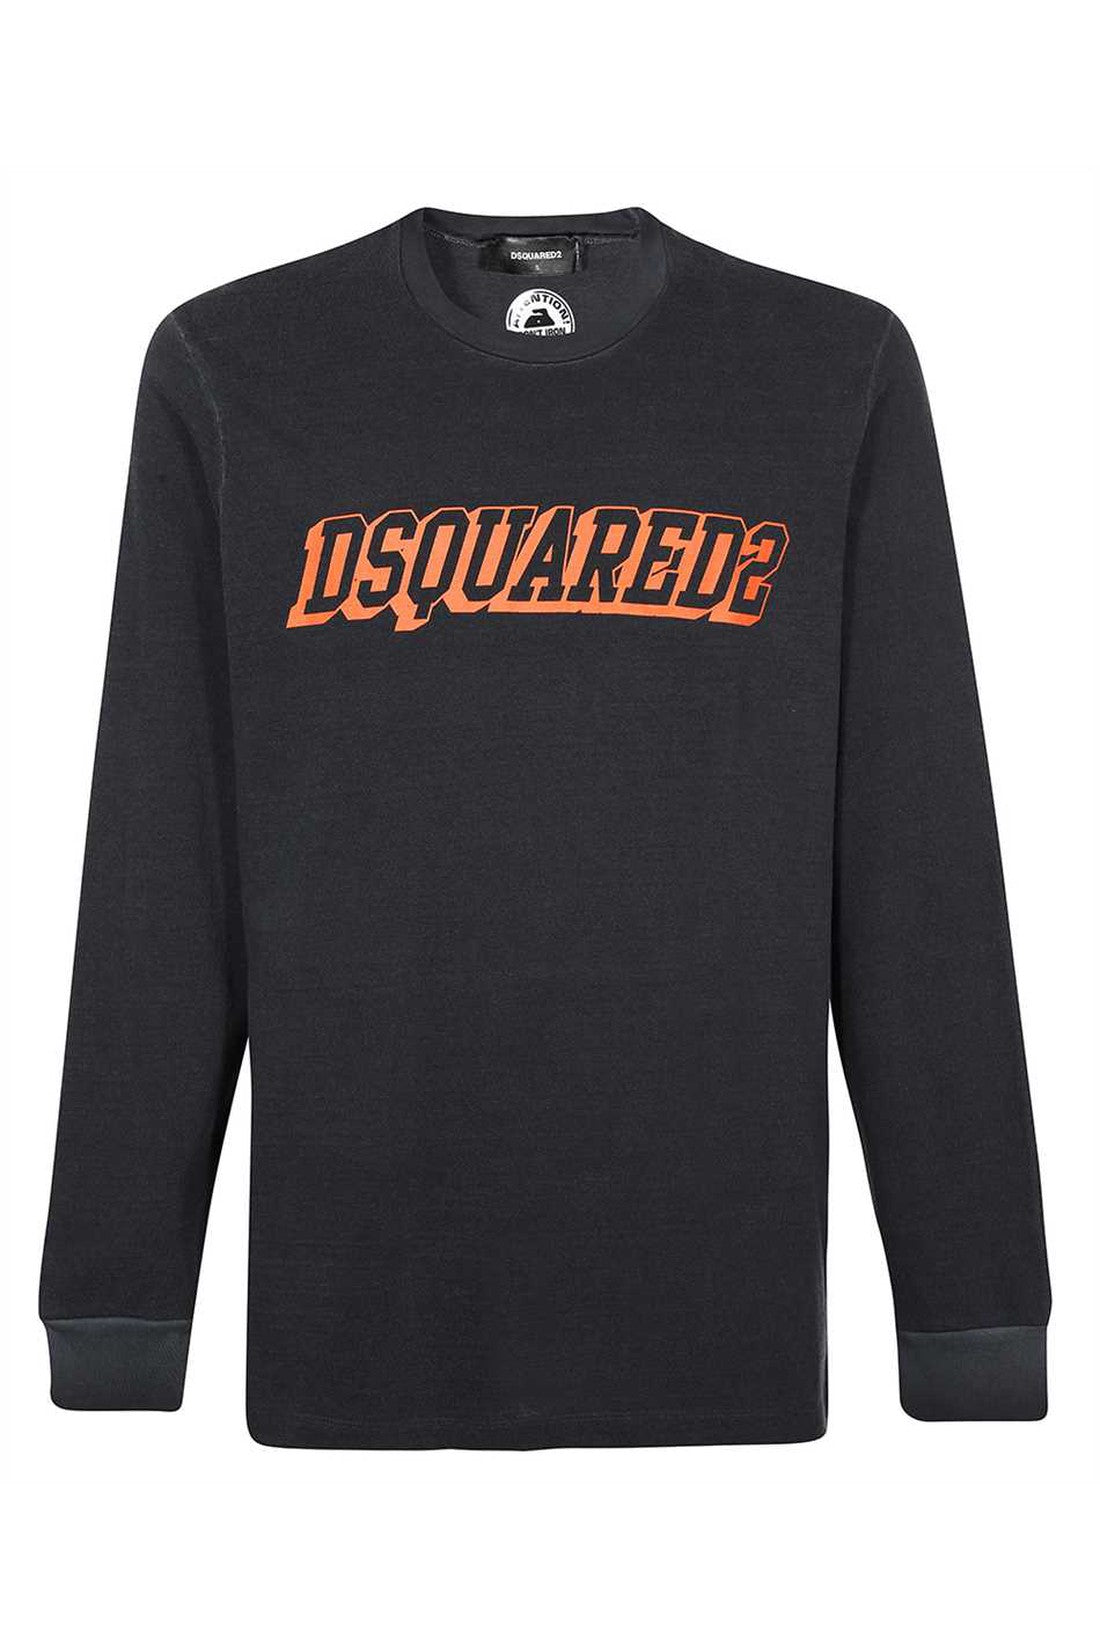 Dsquared2-OUTLET-SALE-Long sleeve cotton t-shirt-ARCHIVIST